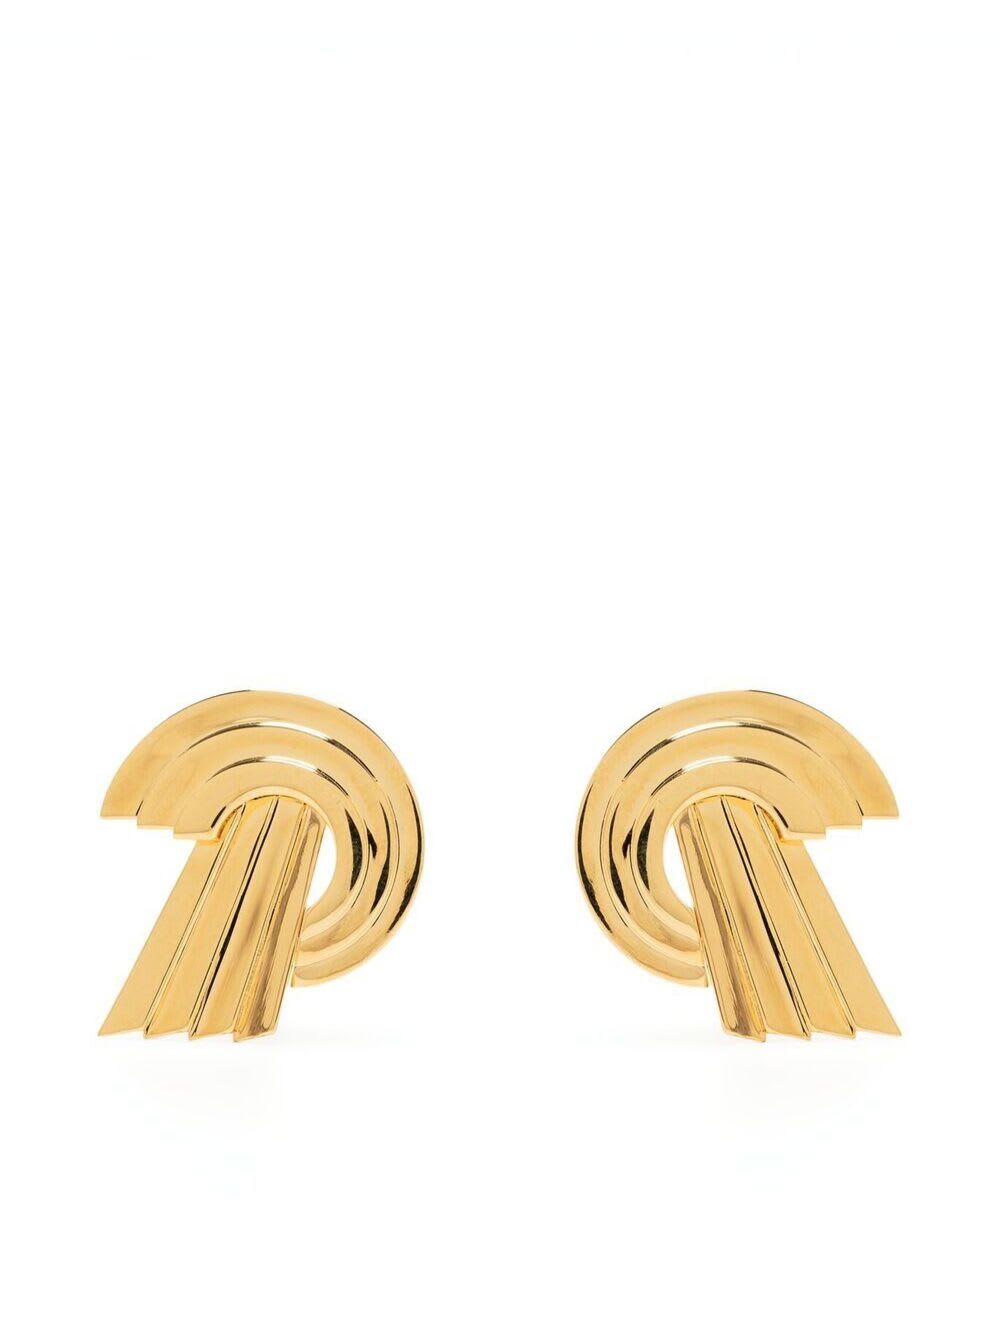 Leda Madera Meryl Golden Brass Earrings